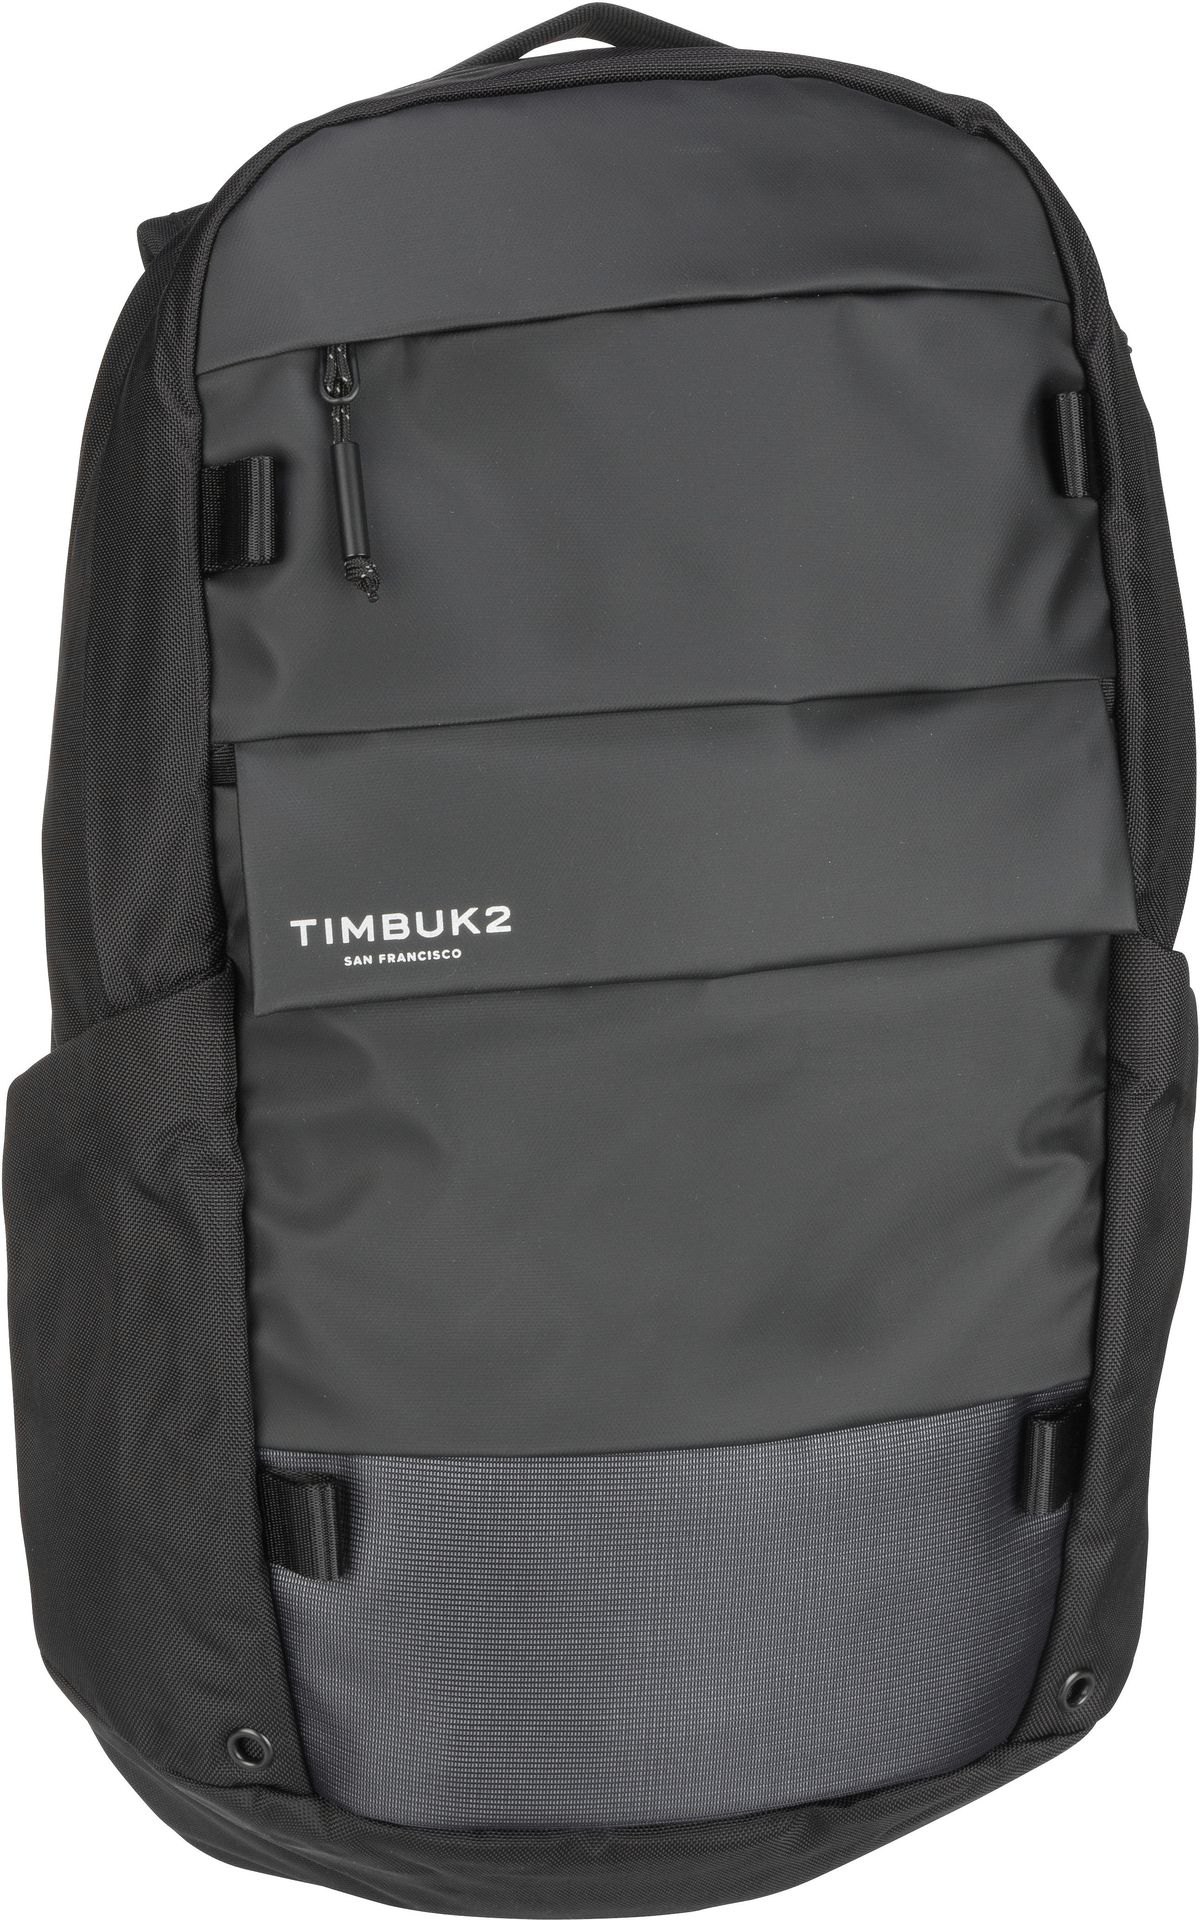 Timbuk2 Lane Commuter Backpack - Jet Black